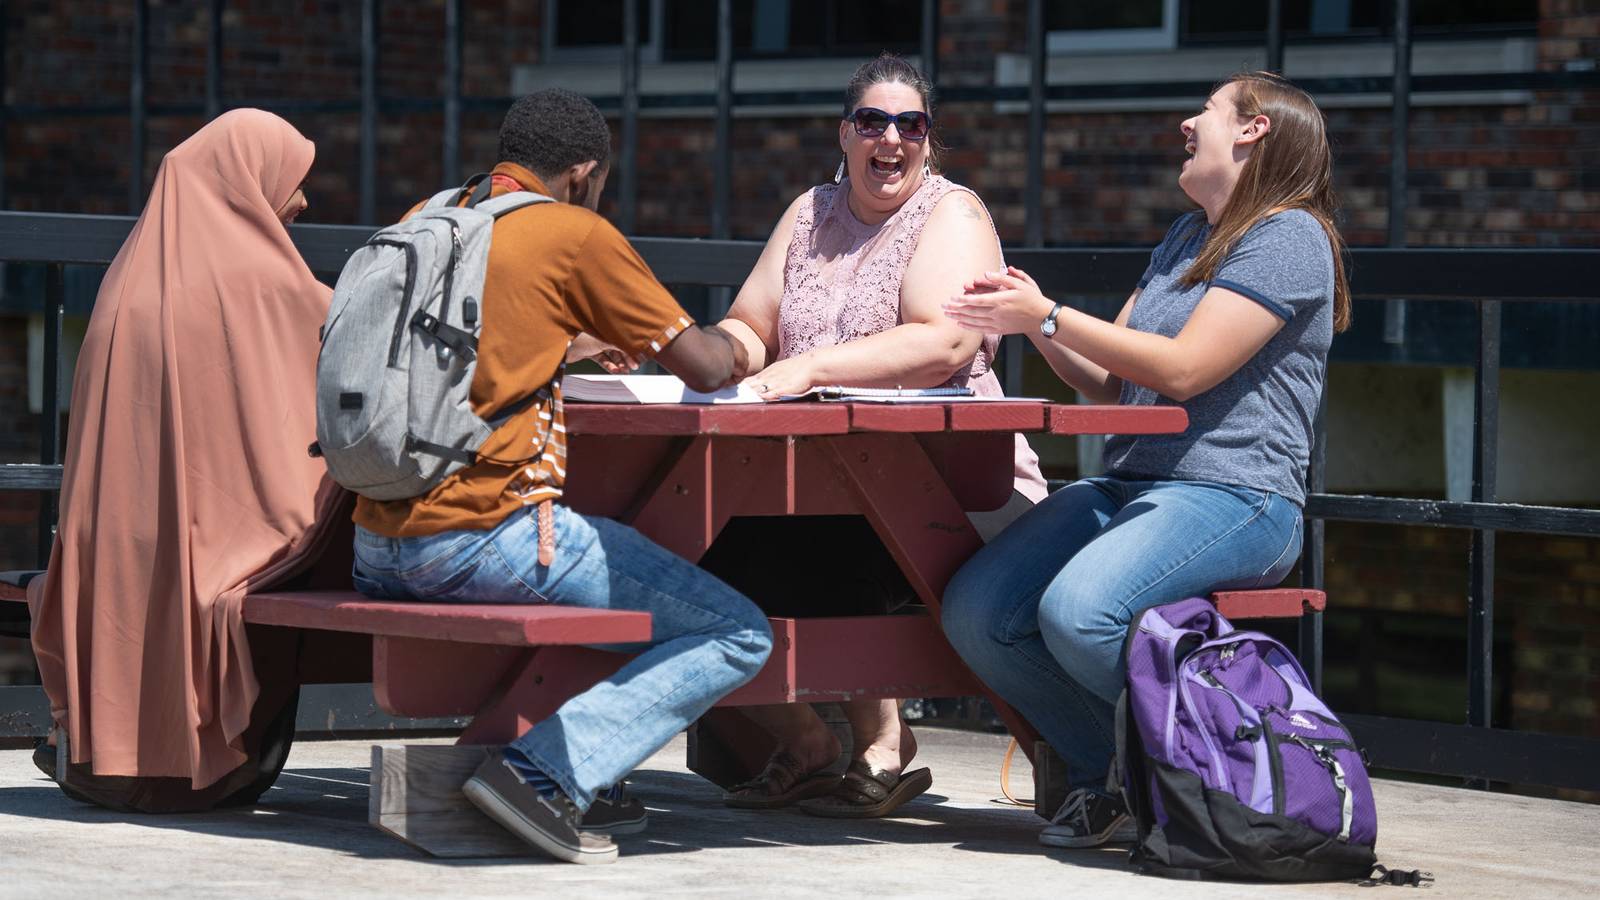 Students at picnic table, Rice Lake campus